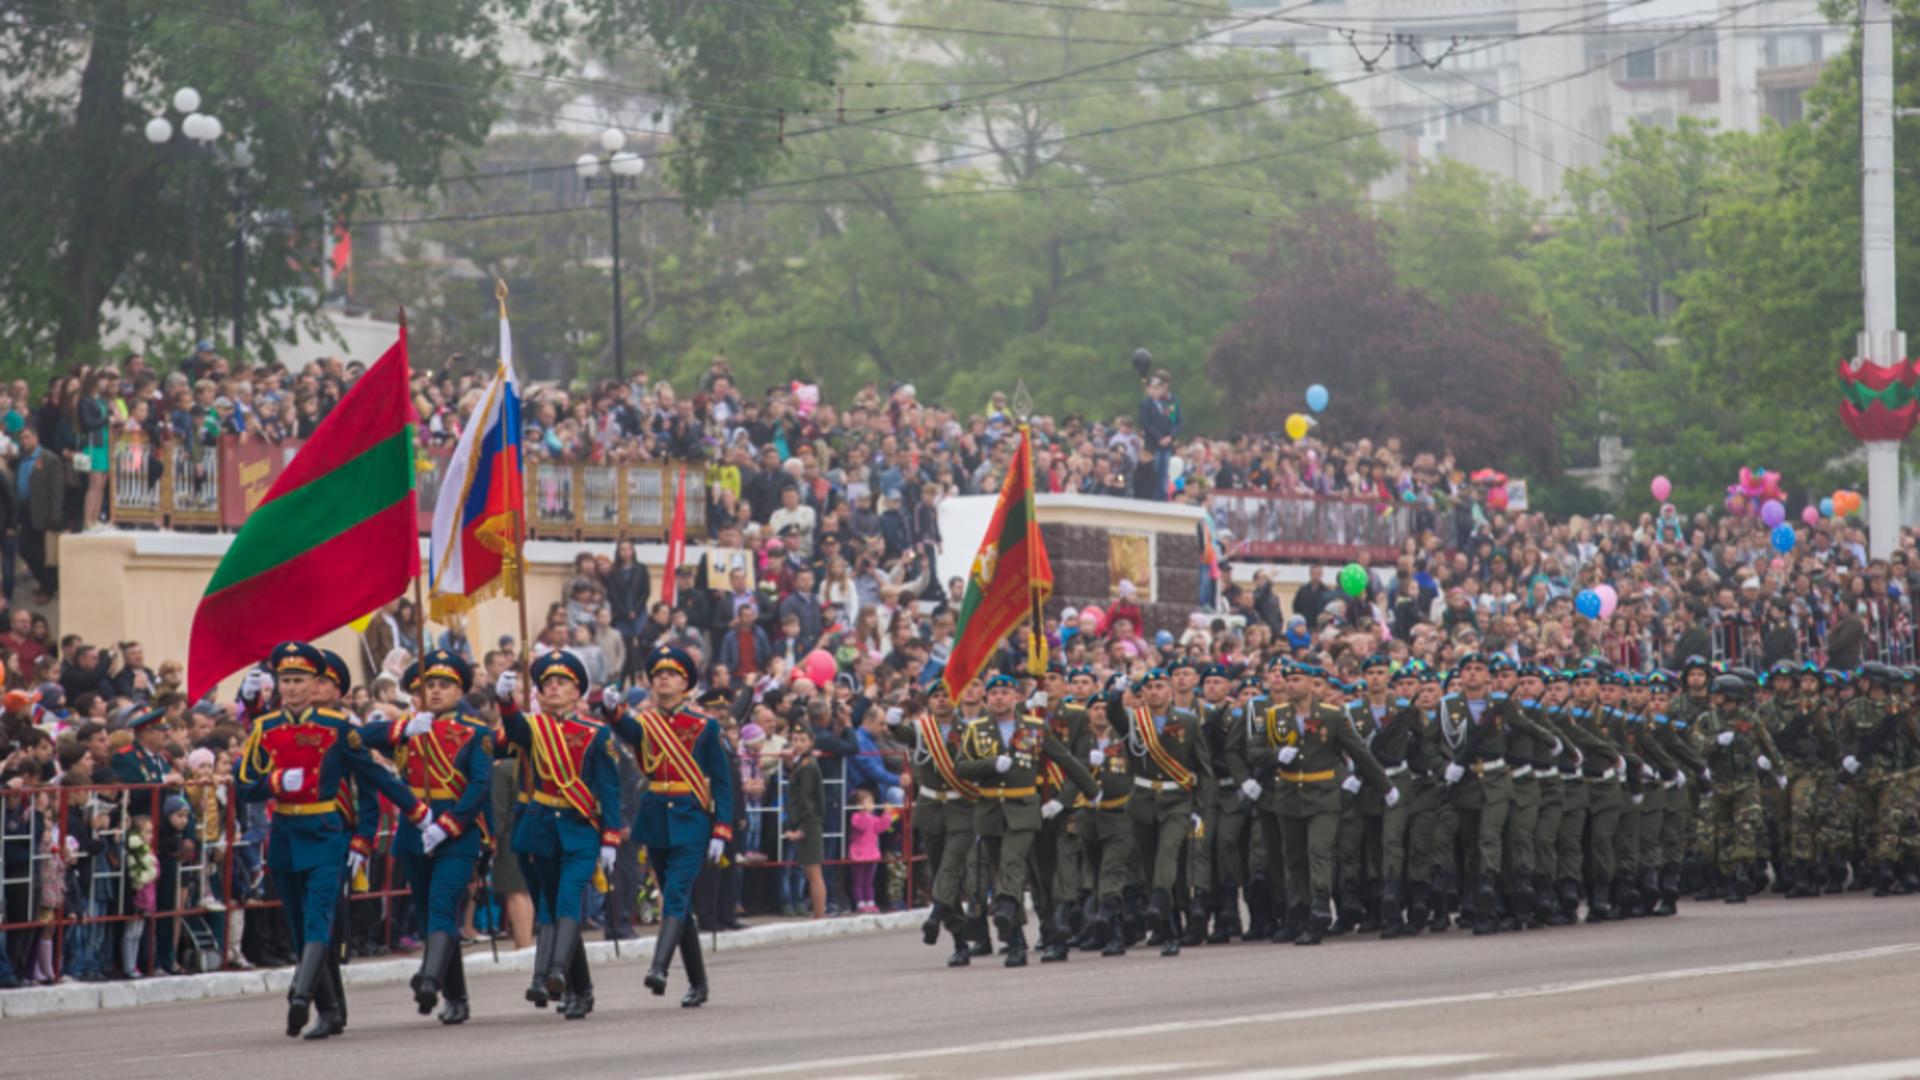 Moldova scapă, momentan, de Rusia. Transnistria nu vrea alipire și independență, susțin ucrianenii